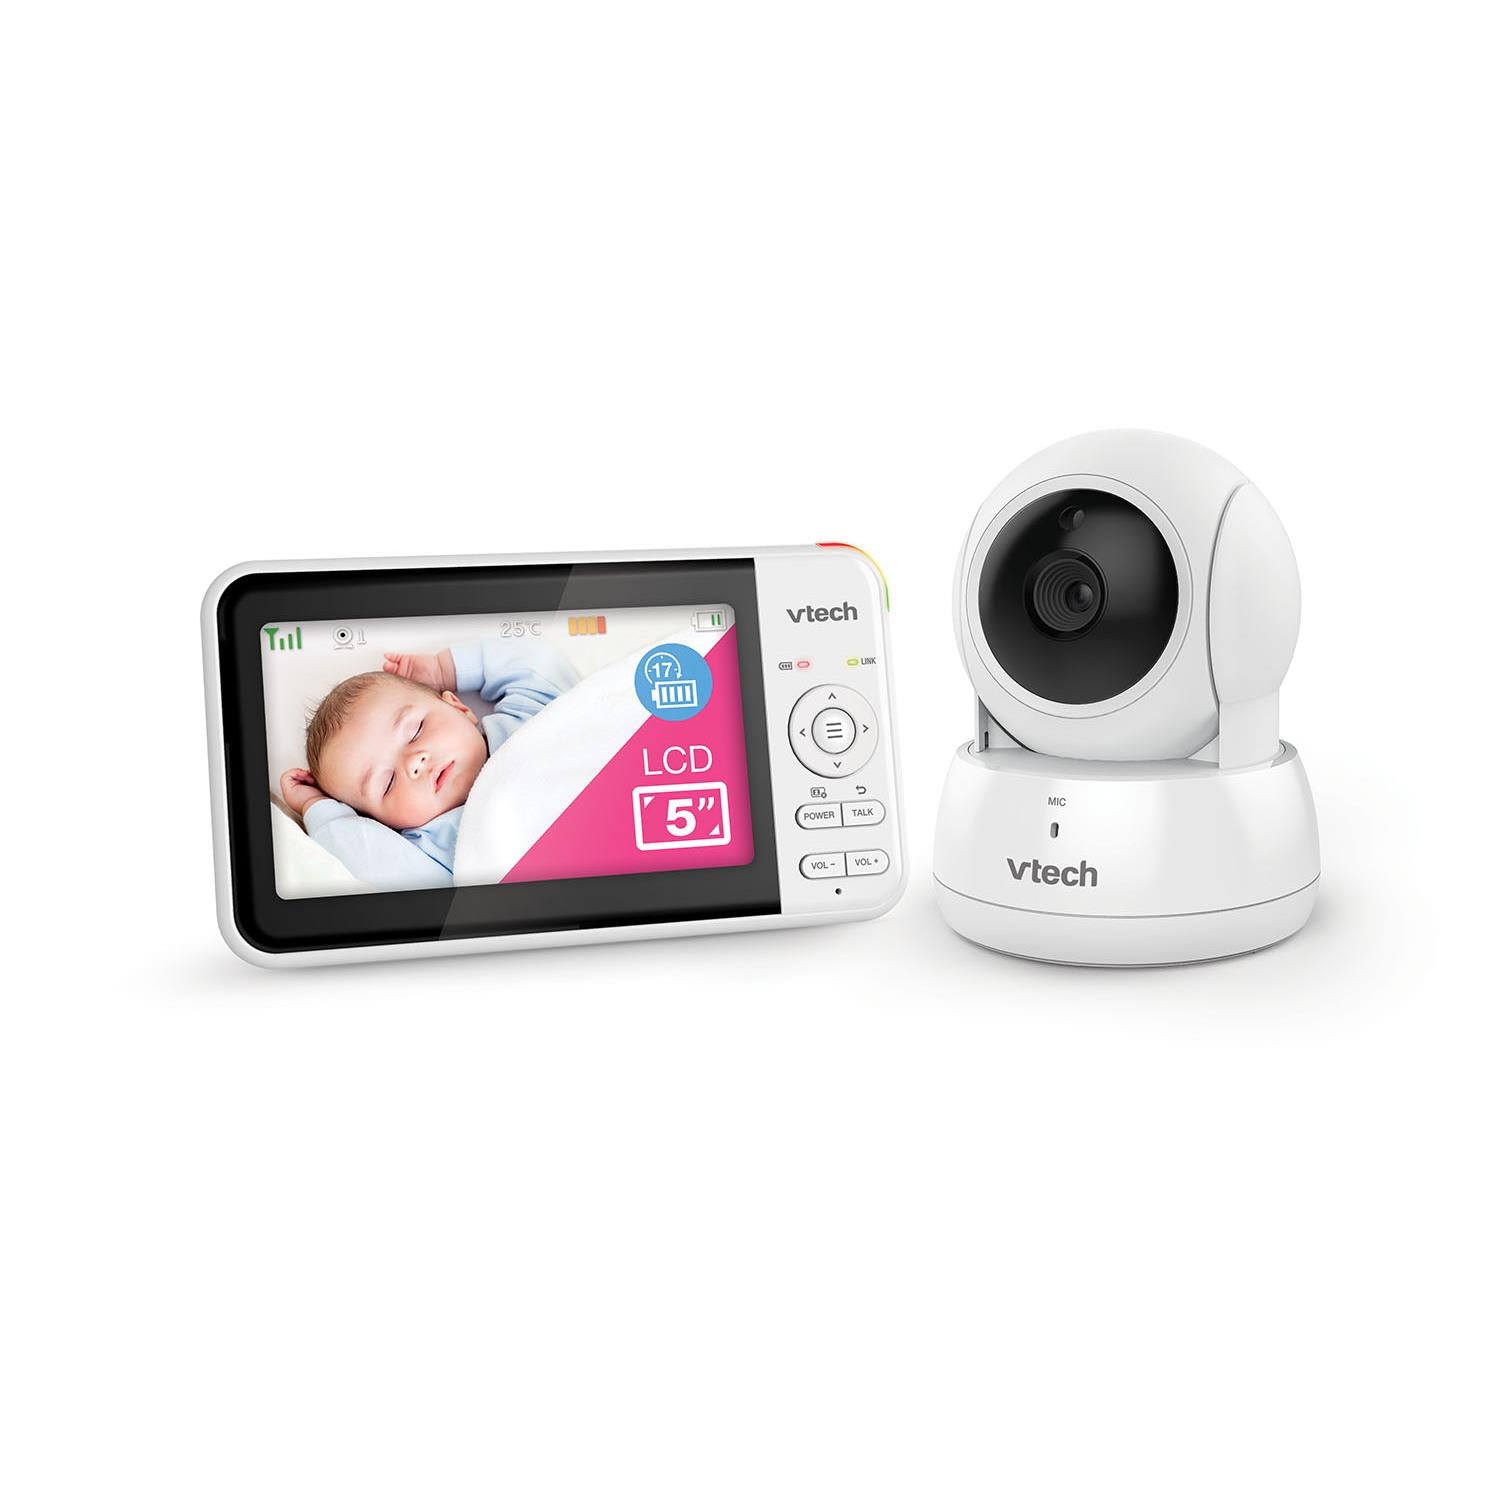 vtech bm5550 5" full colour pan & tilt baby monitor